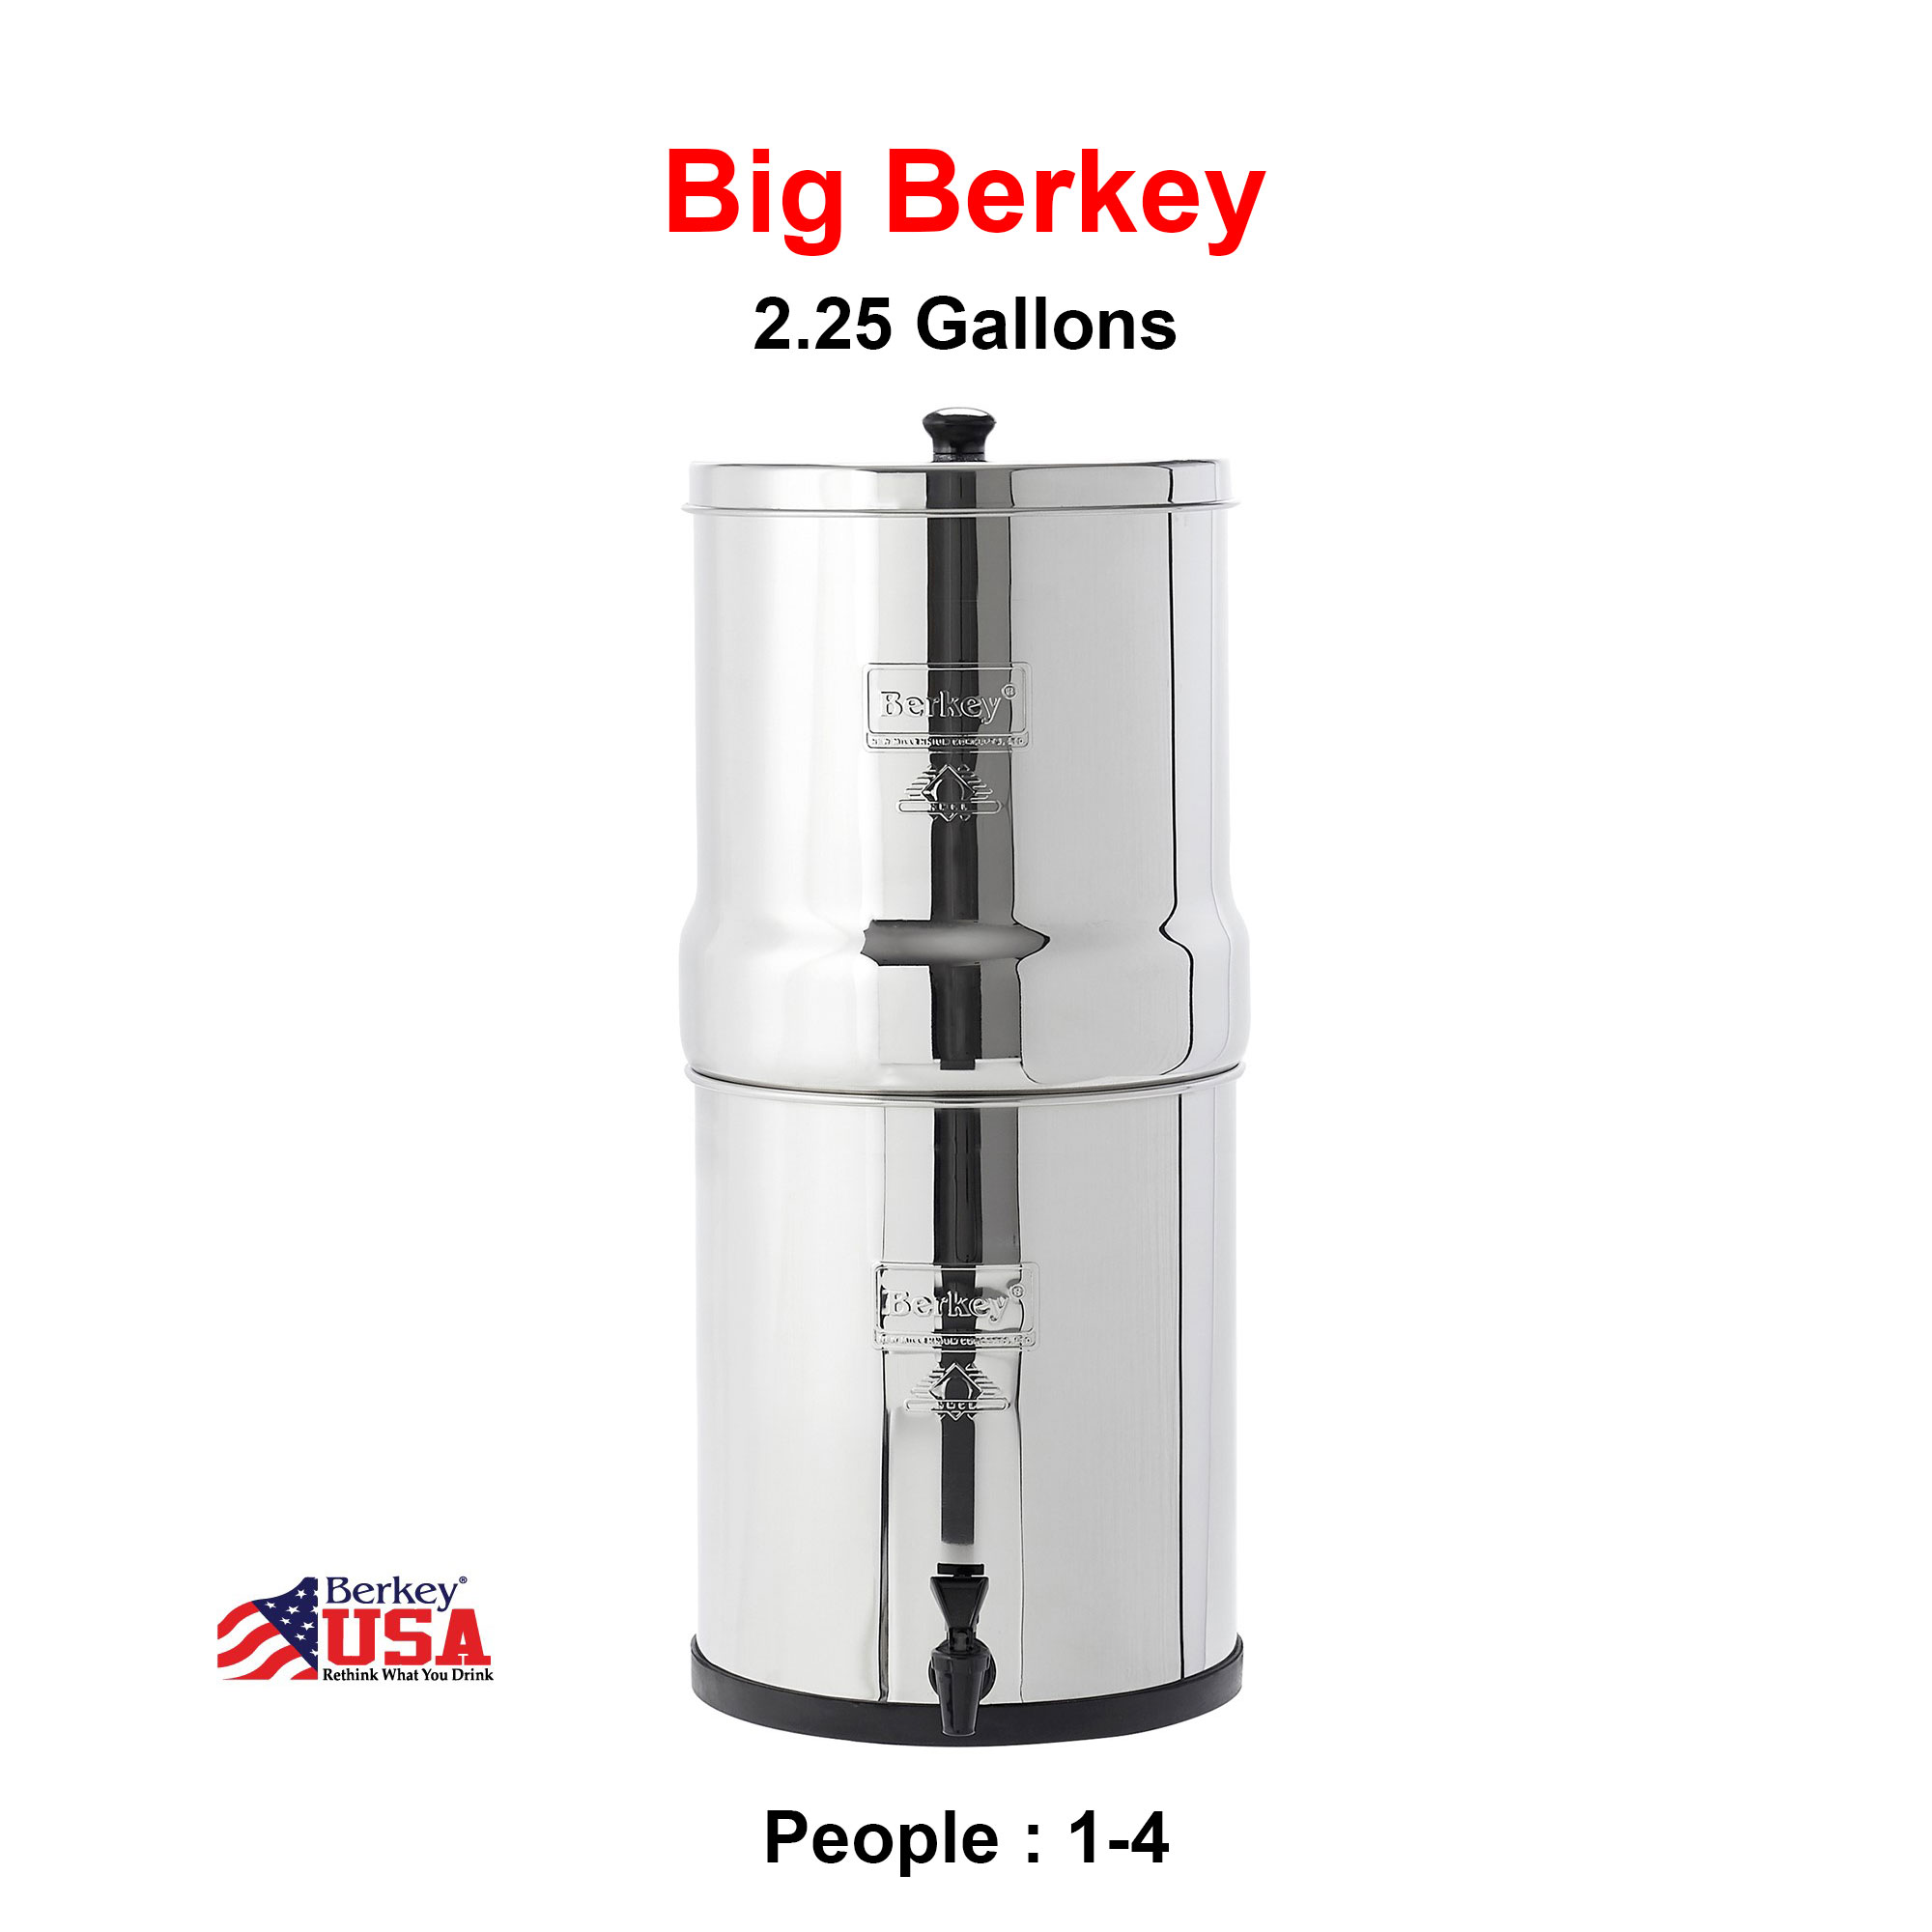 Big Berkey Water Filter By Berkey USA